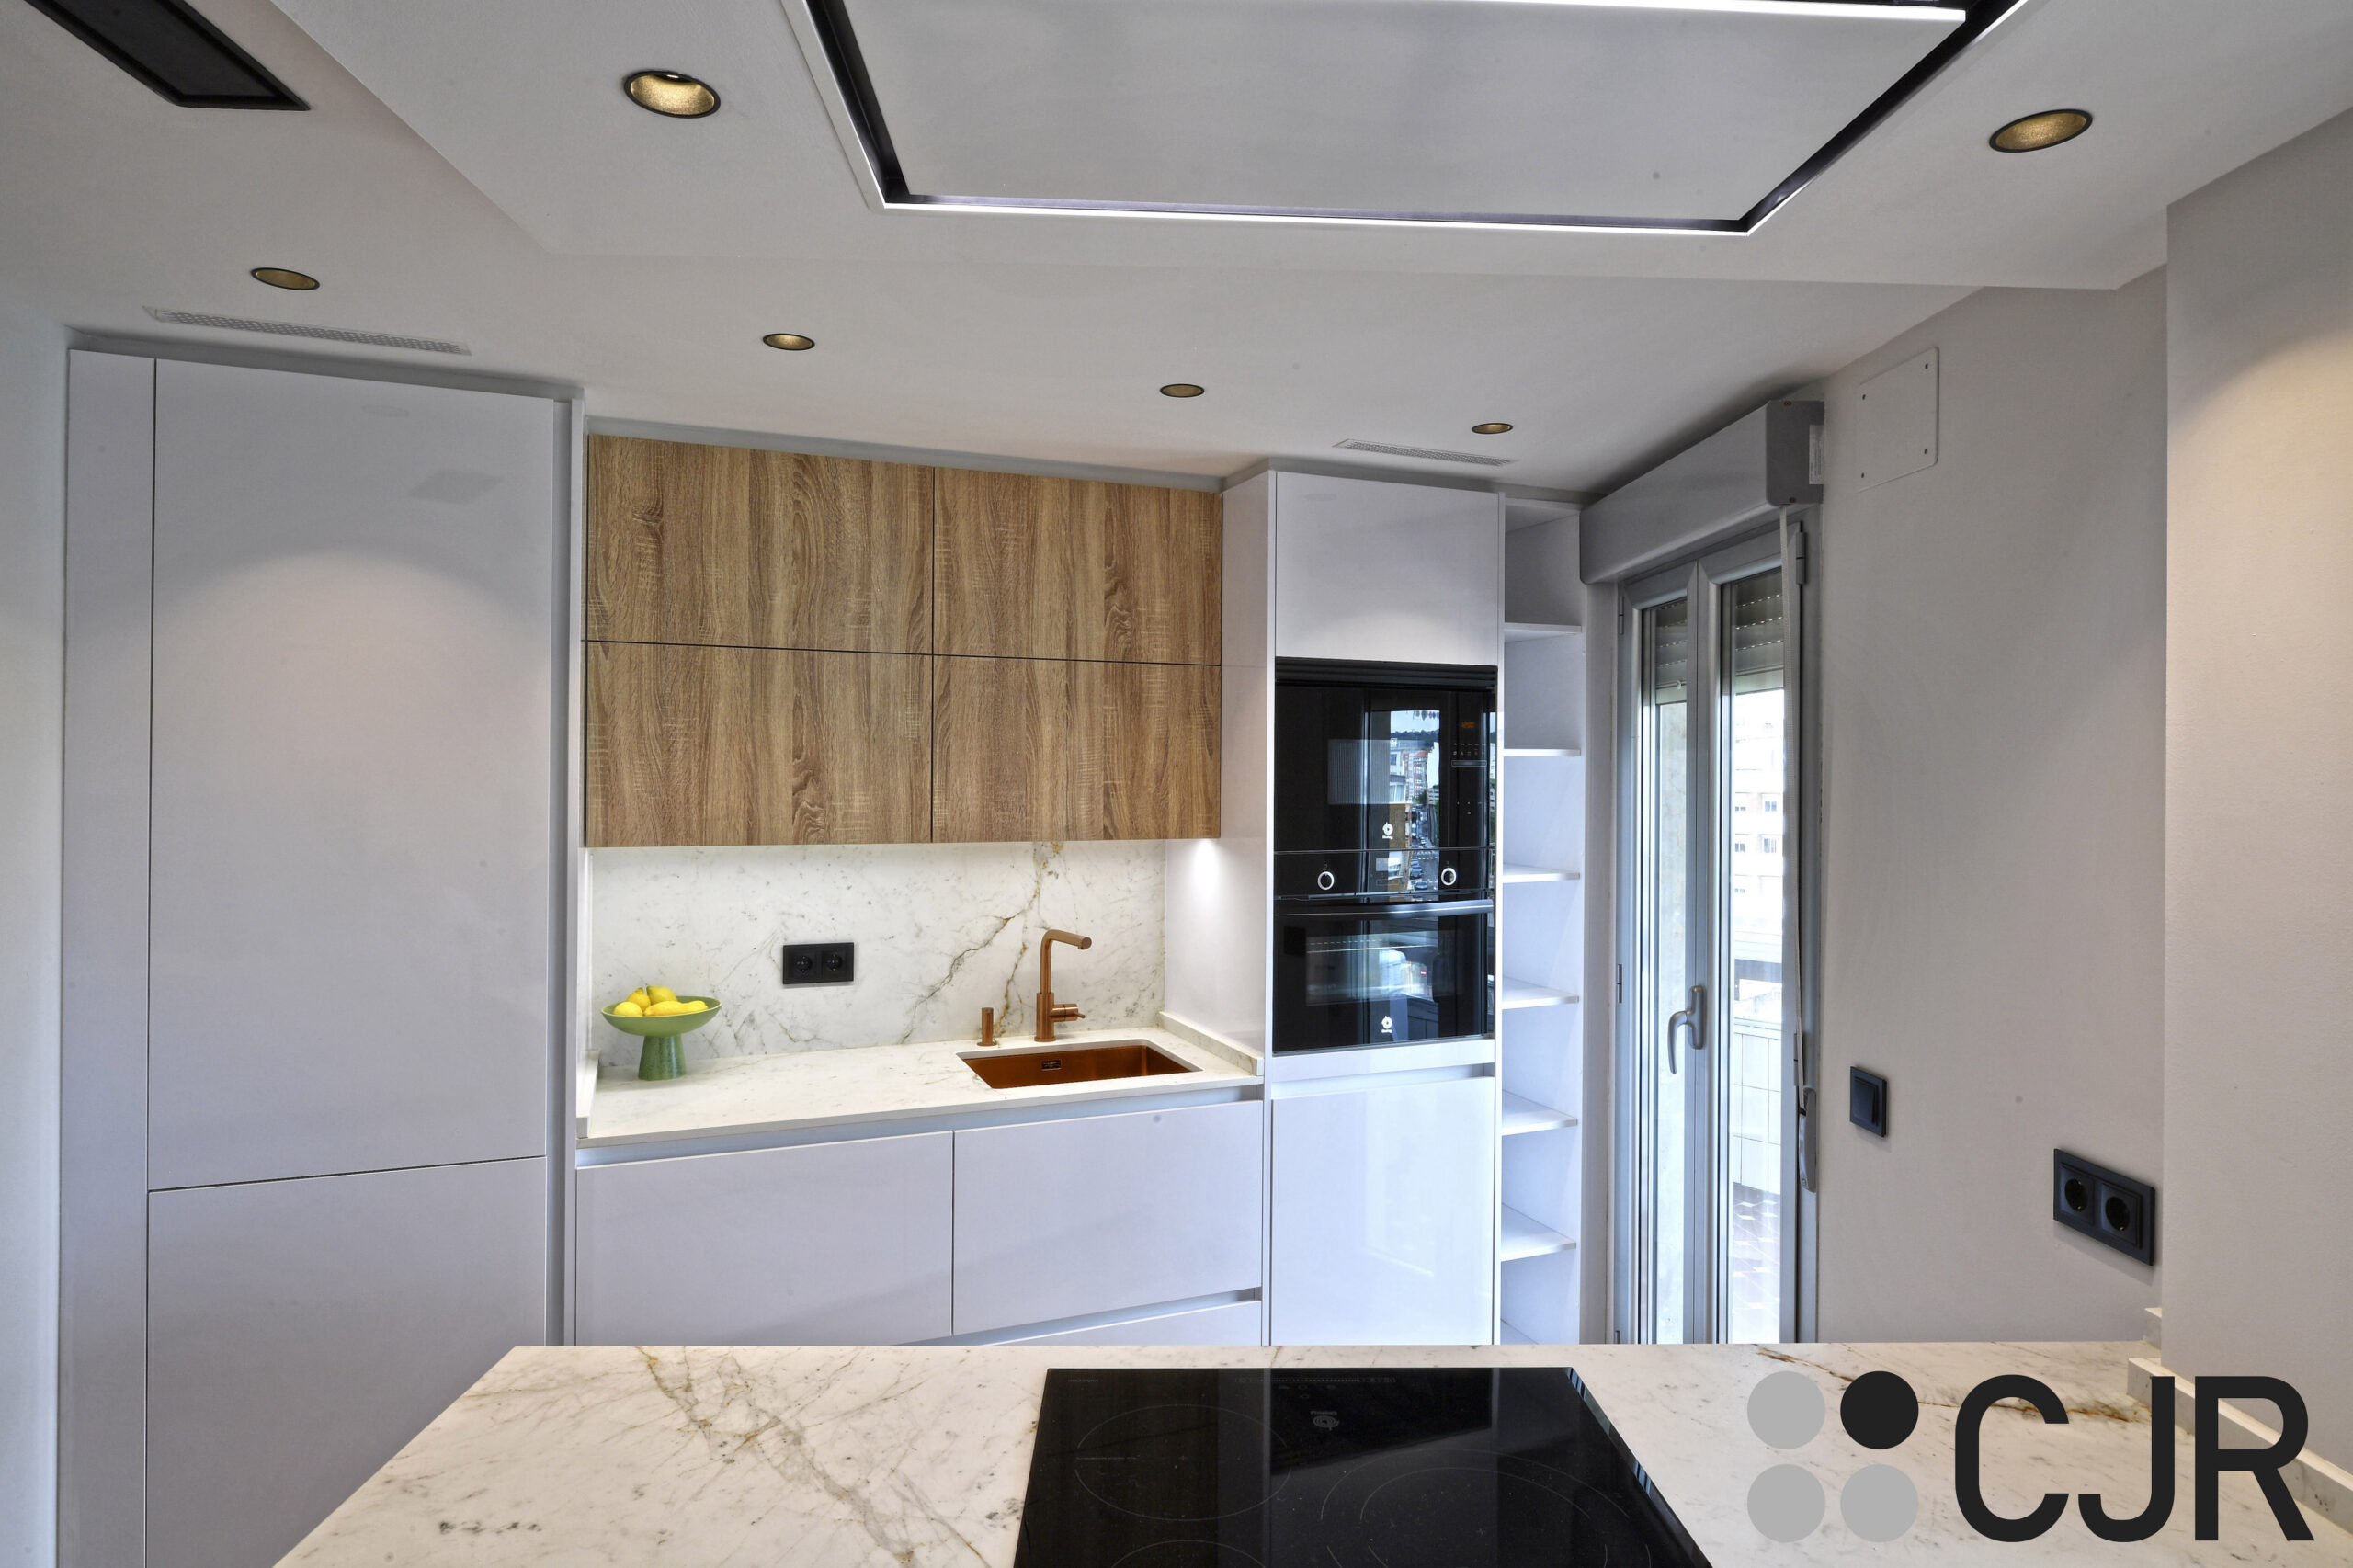 cocina blanca y madera moderna abierta al salon con peninsula cocinas cjr